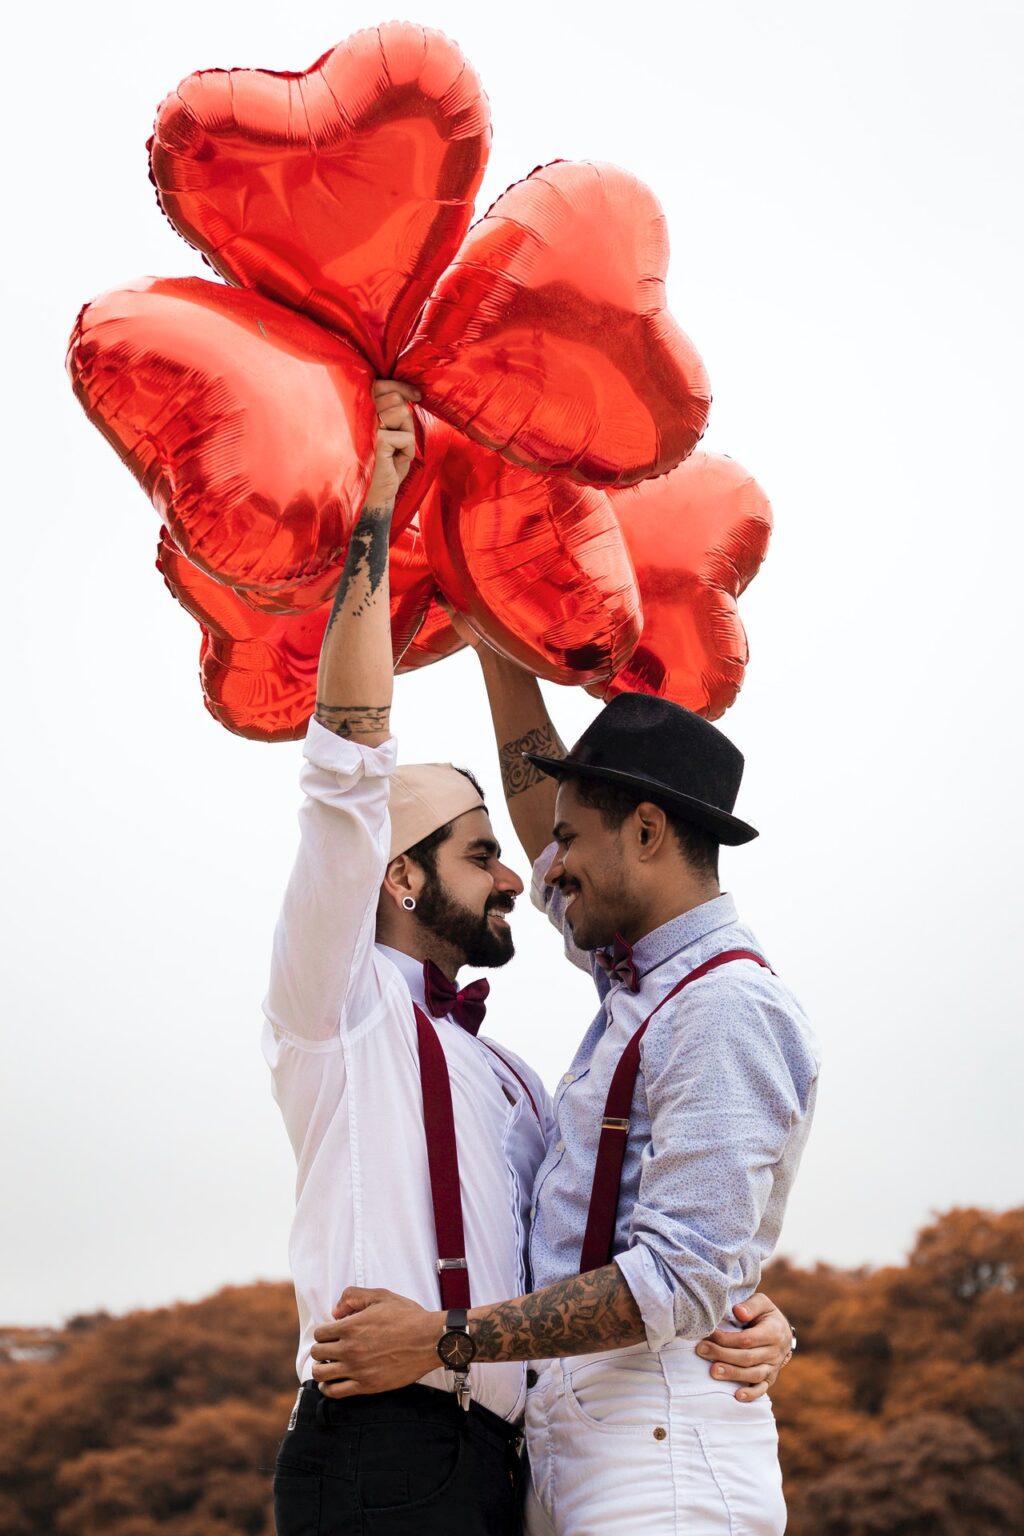 ceremonieel huwelijk twee mannen embracing while holding heart balloons